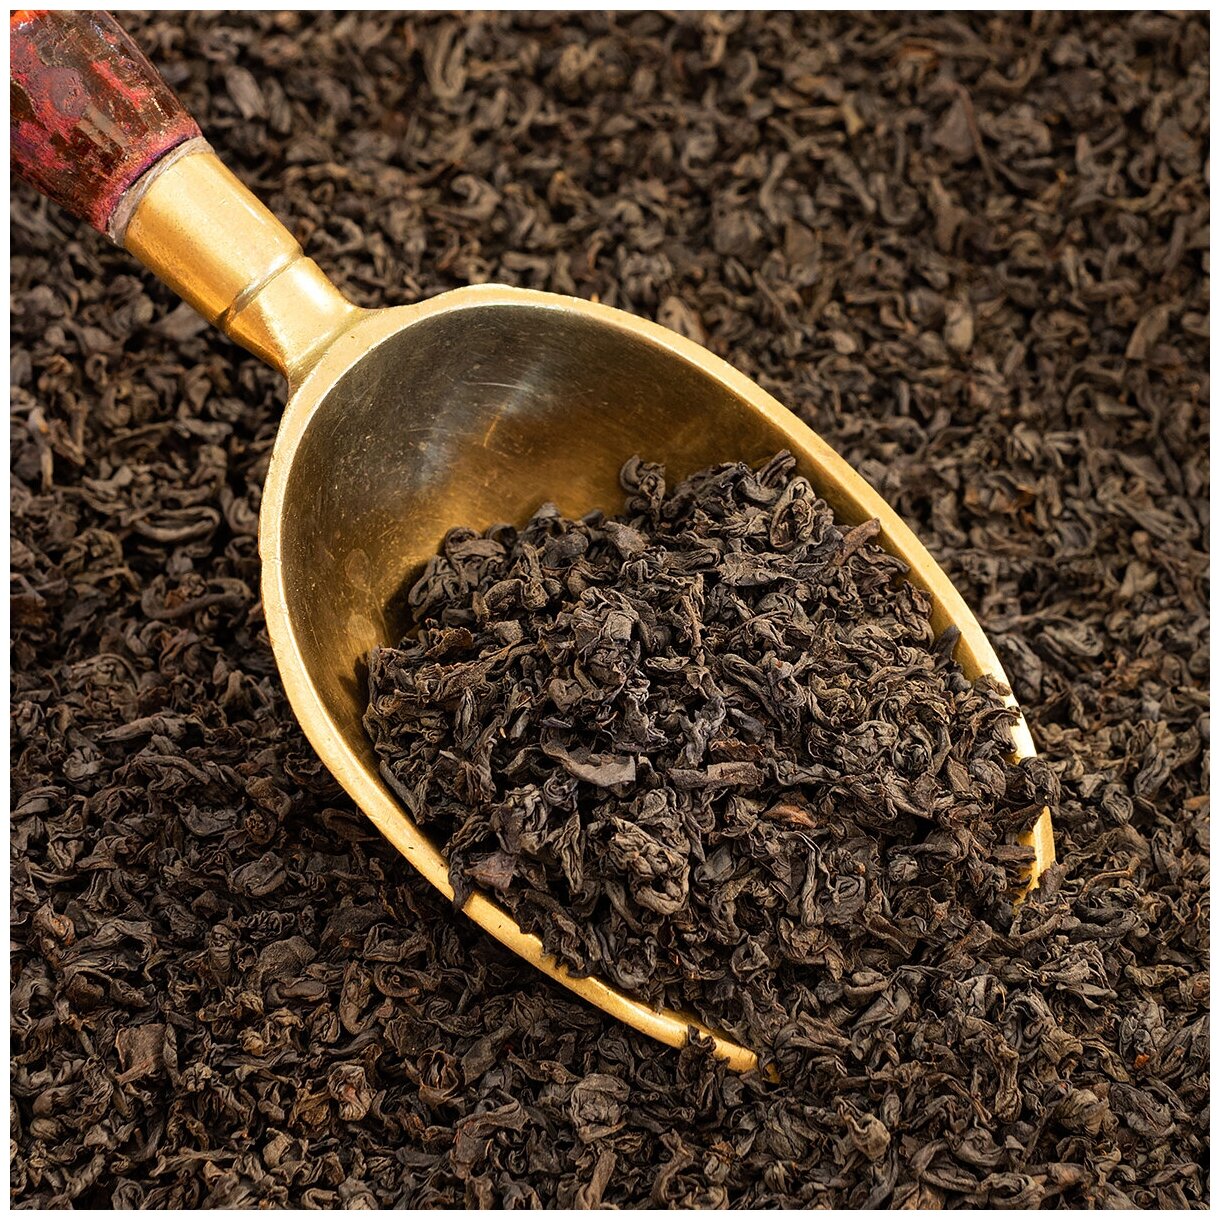 Чай черный Sunleaf Pekoe, 100 г / листовой черный чай / Цейлон пеко / Цейлонский чай - фотография № 4